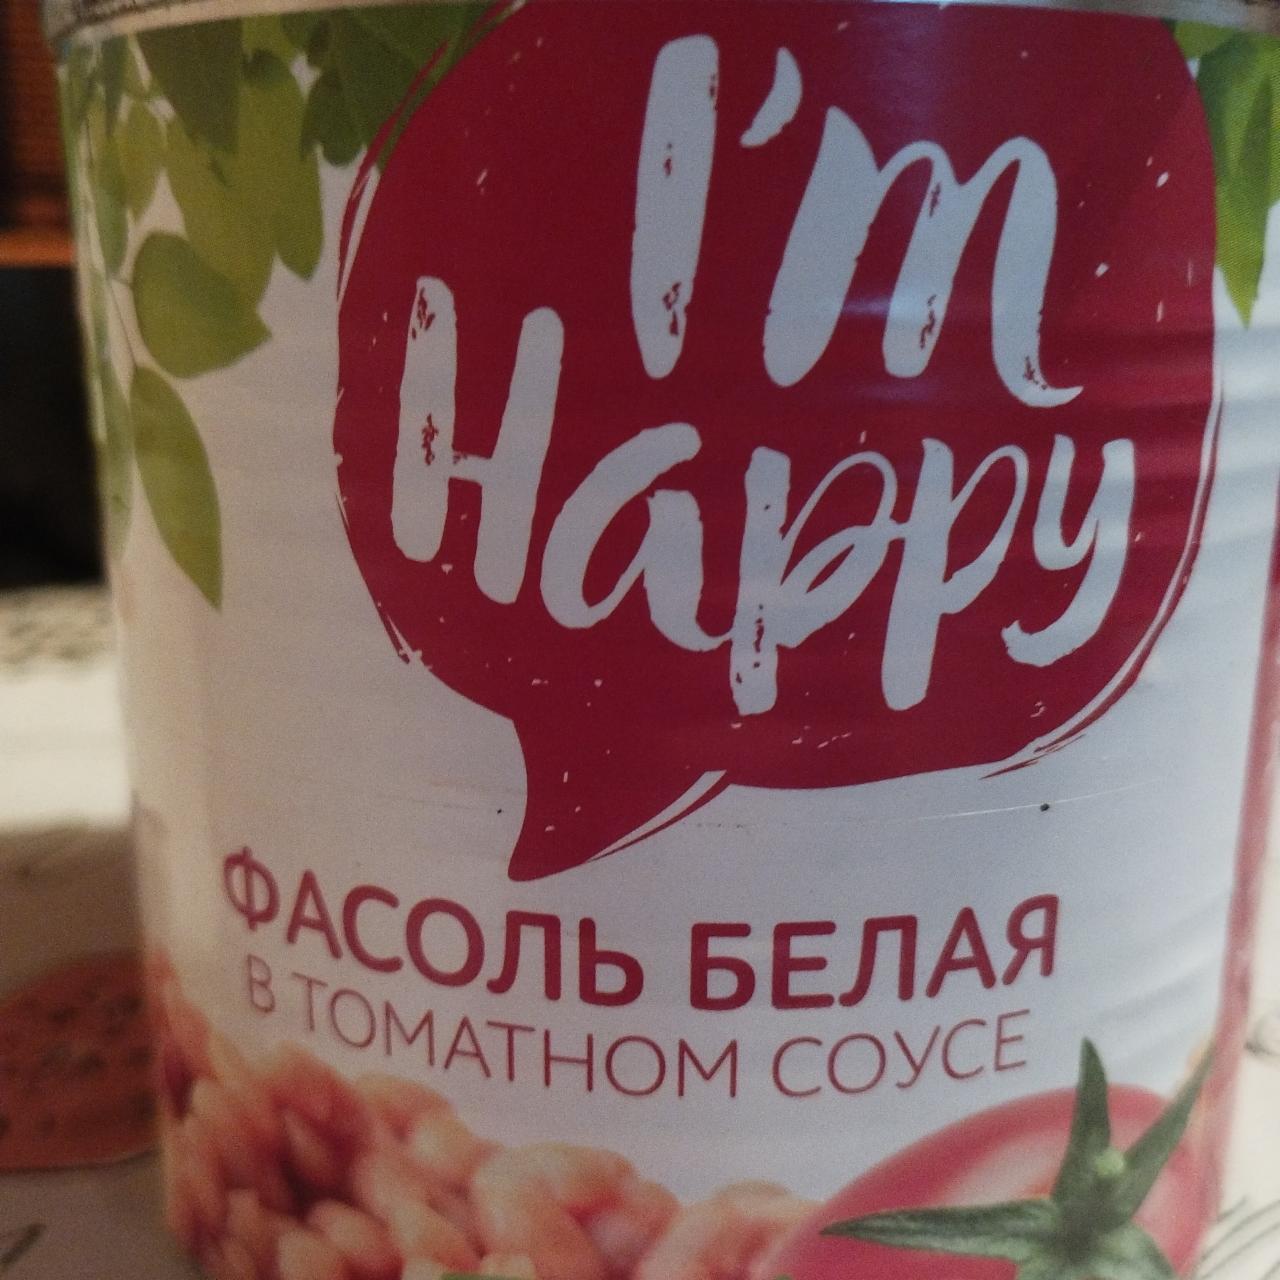 Фото - фасоль красная в томатном соусе I'm happy